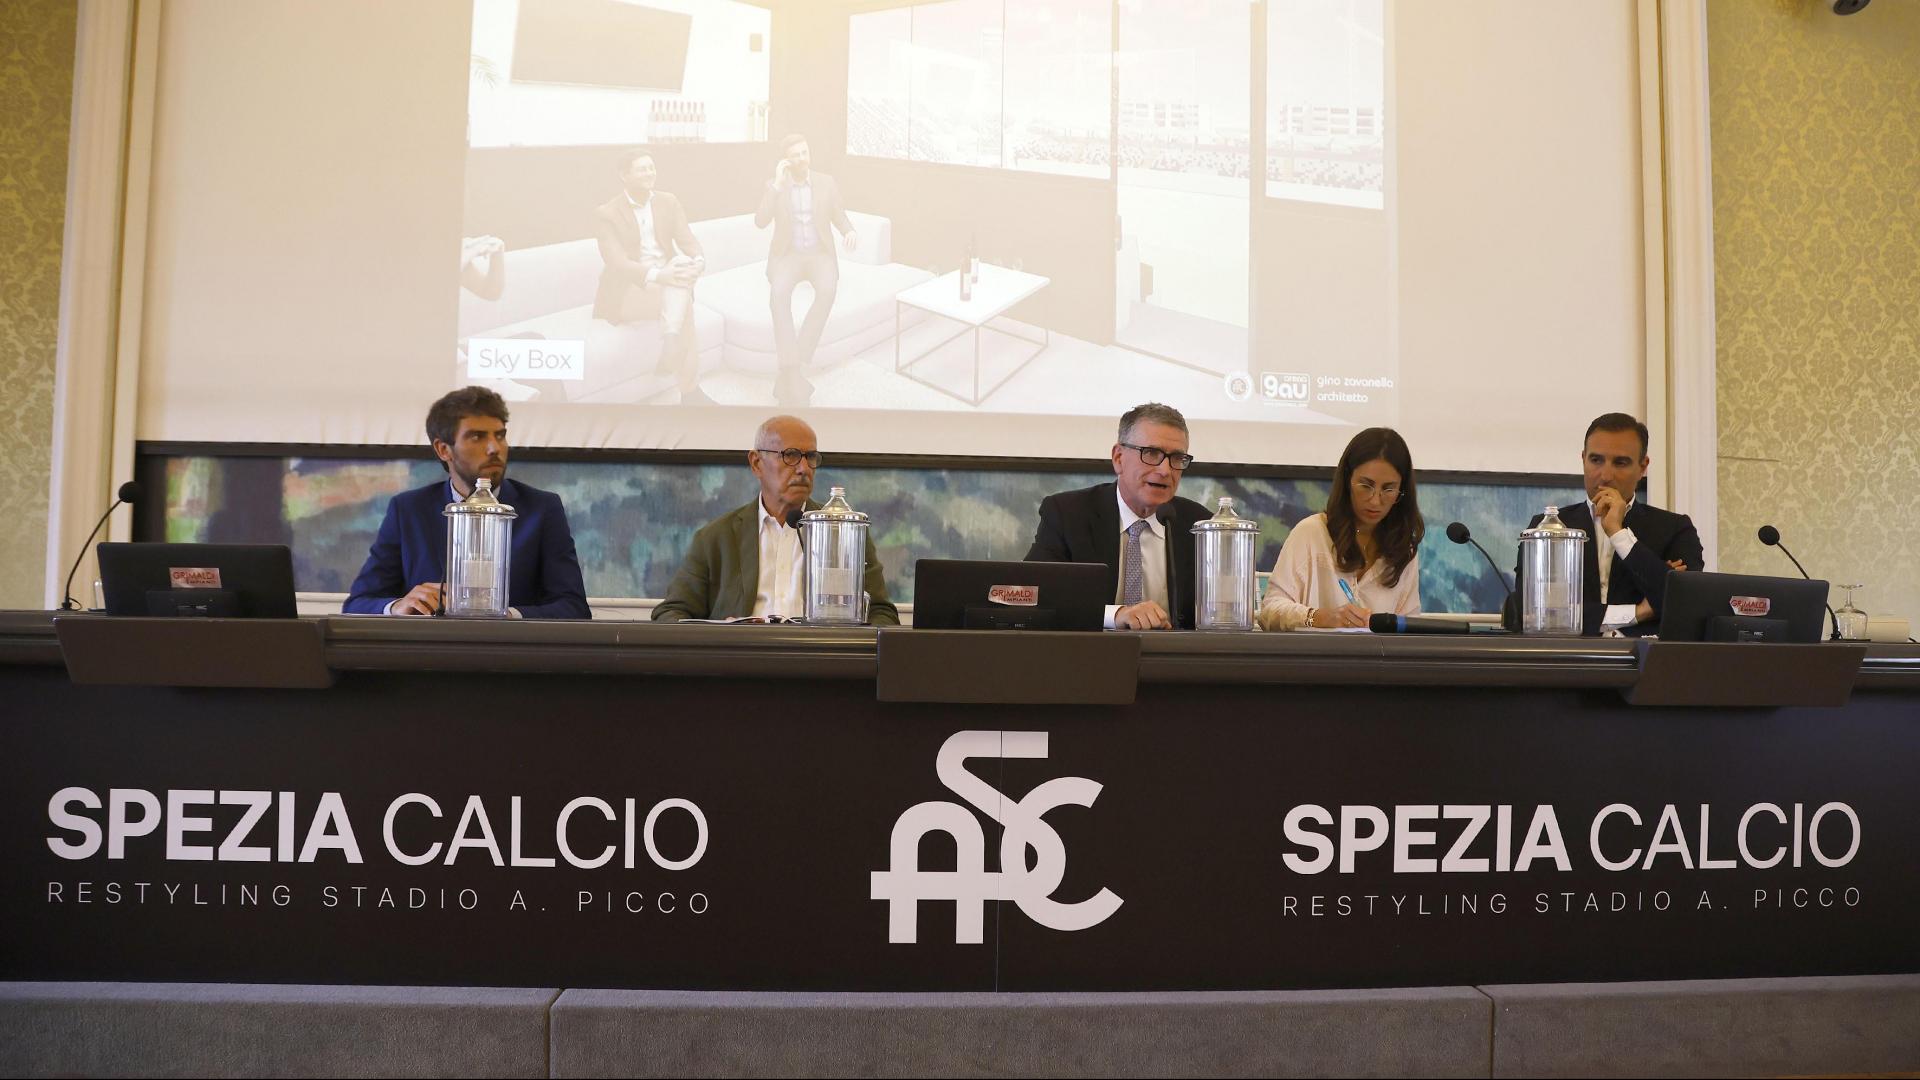 At Villa Marigola the presentation of the new Alberto Picco stadium